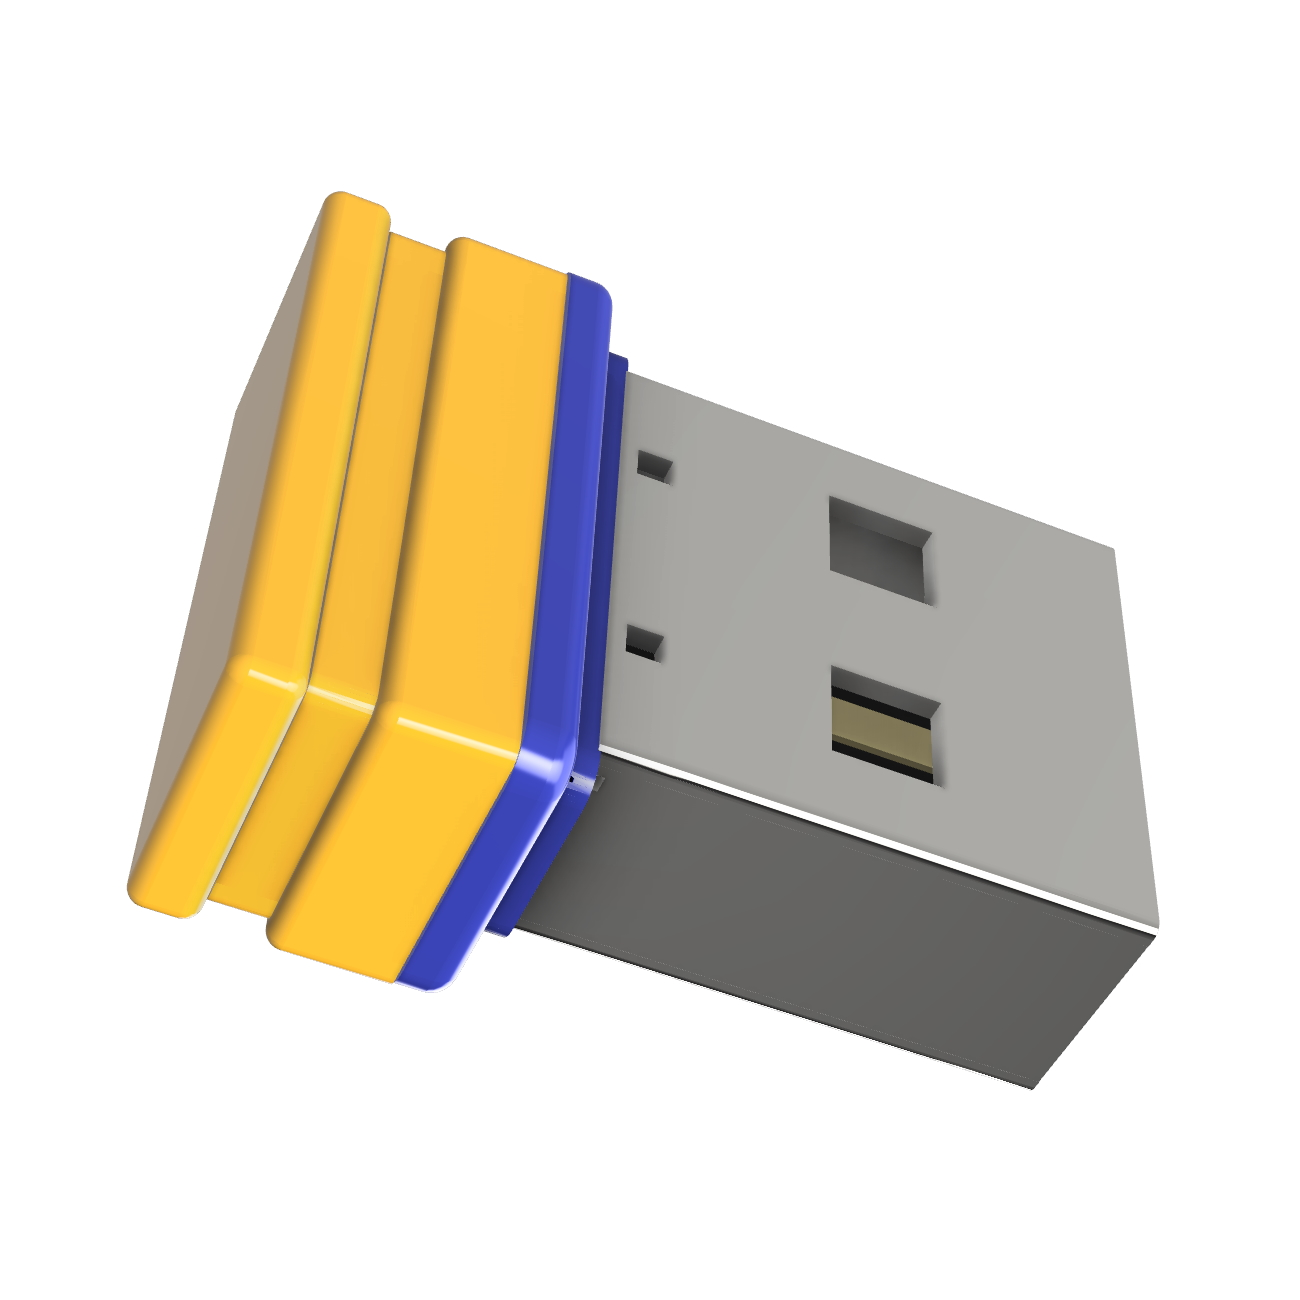 (Gelb/Blau, P1 USB Mini GB) GERMANY ®ULTRA 8 USB-Stick